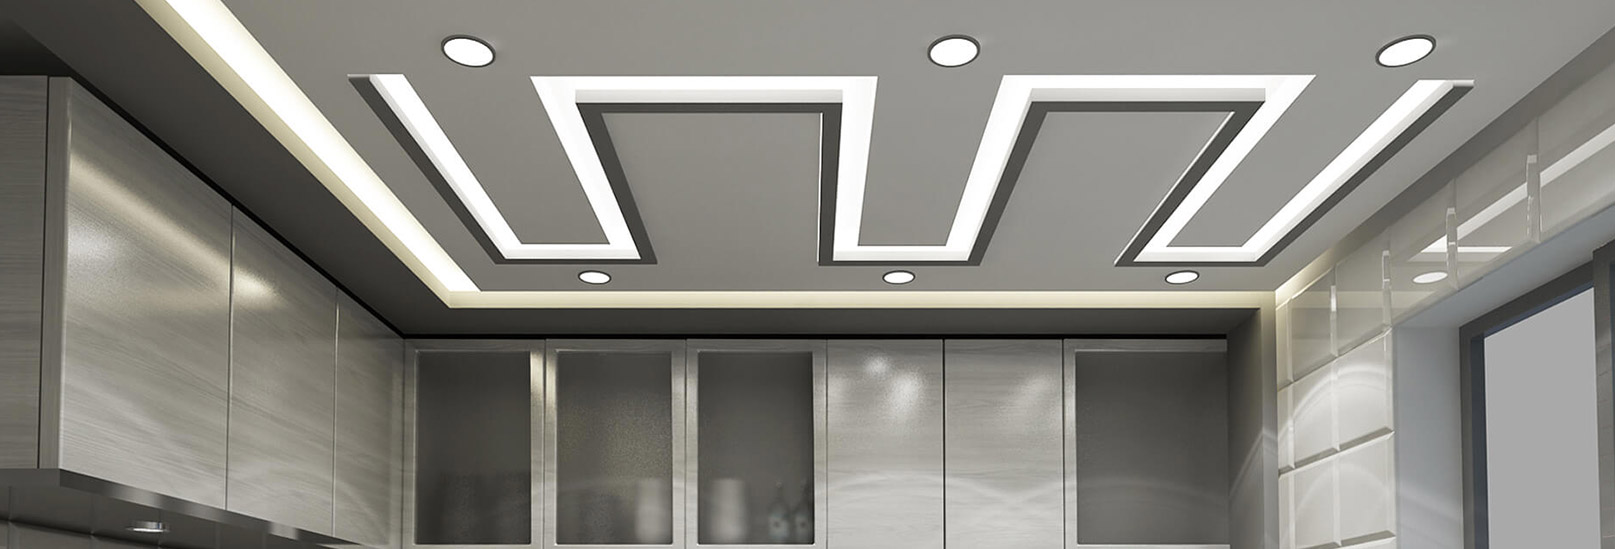 Gyproc False Ceiling Designs For Living Room